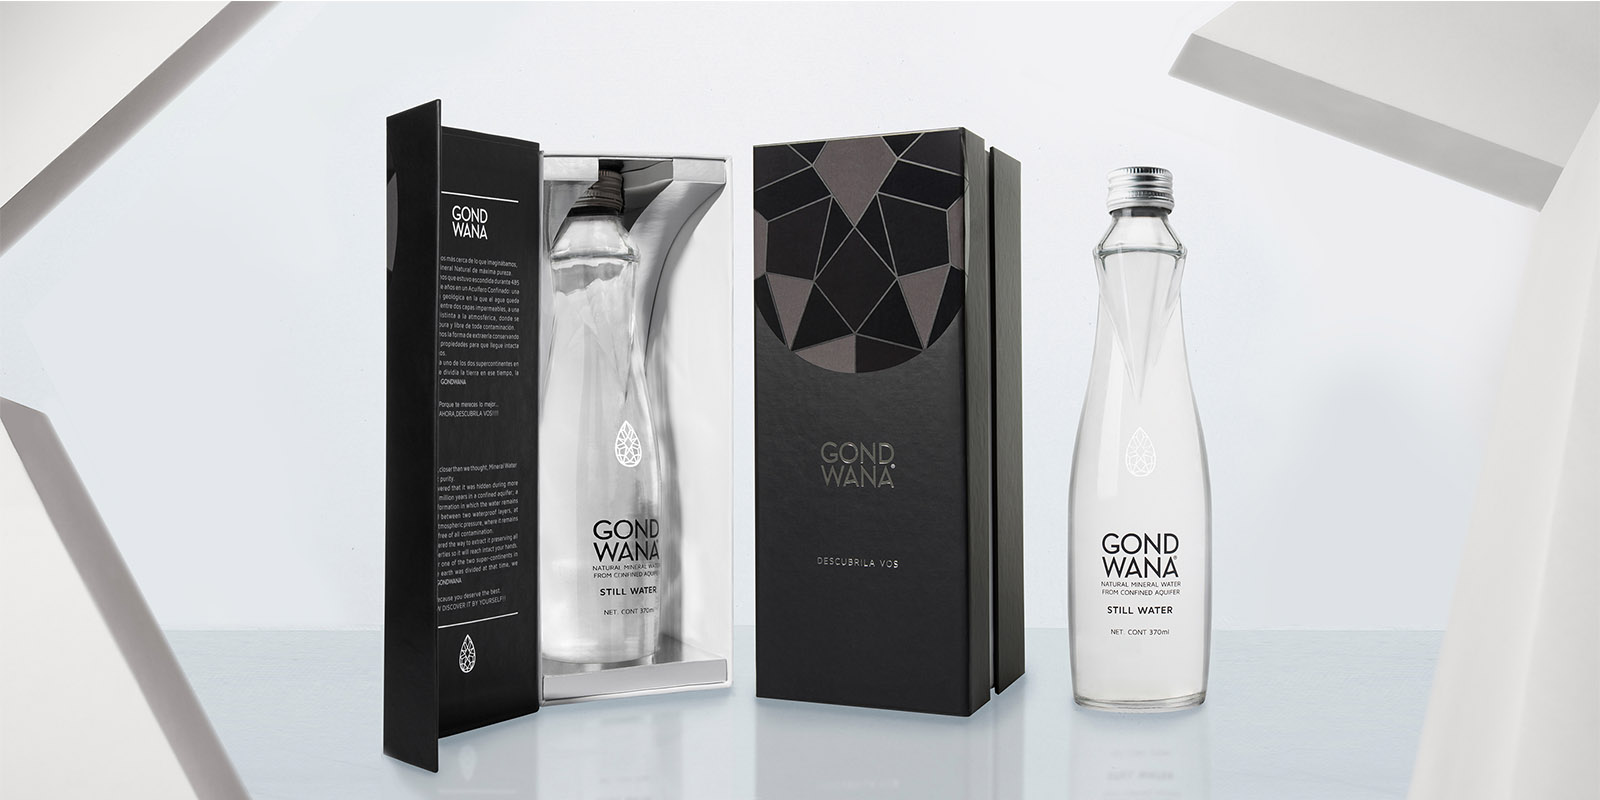 Una botella de agua mineral premium Gond Wana en un elegante empaque en blanco y negro, diseño de packaging por Tridimage.